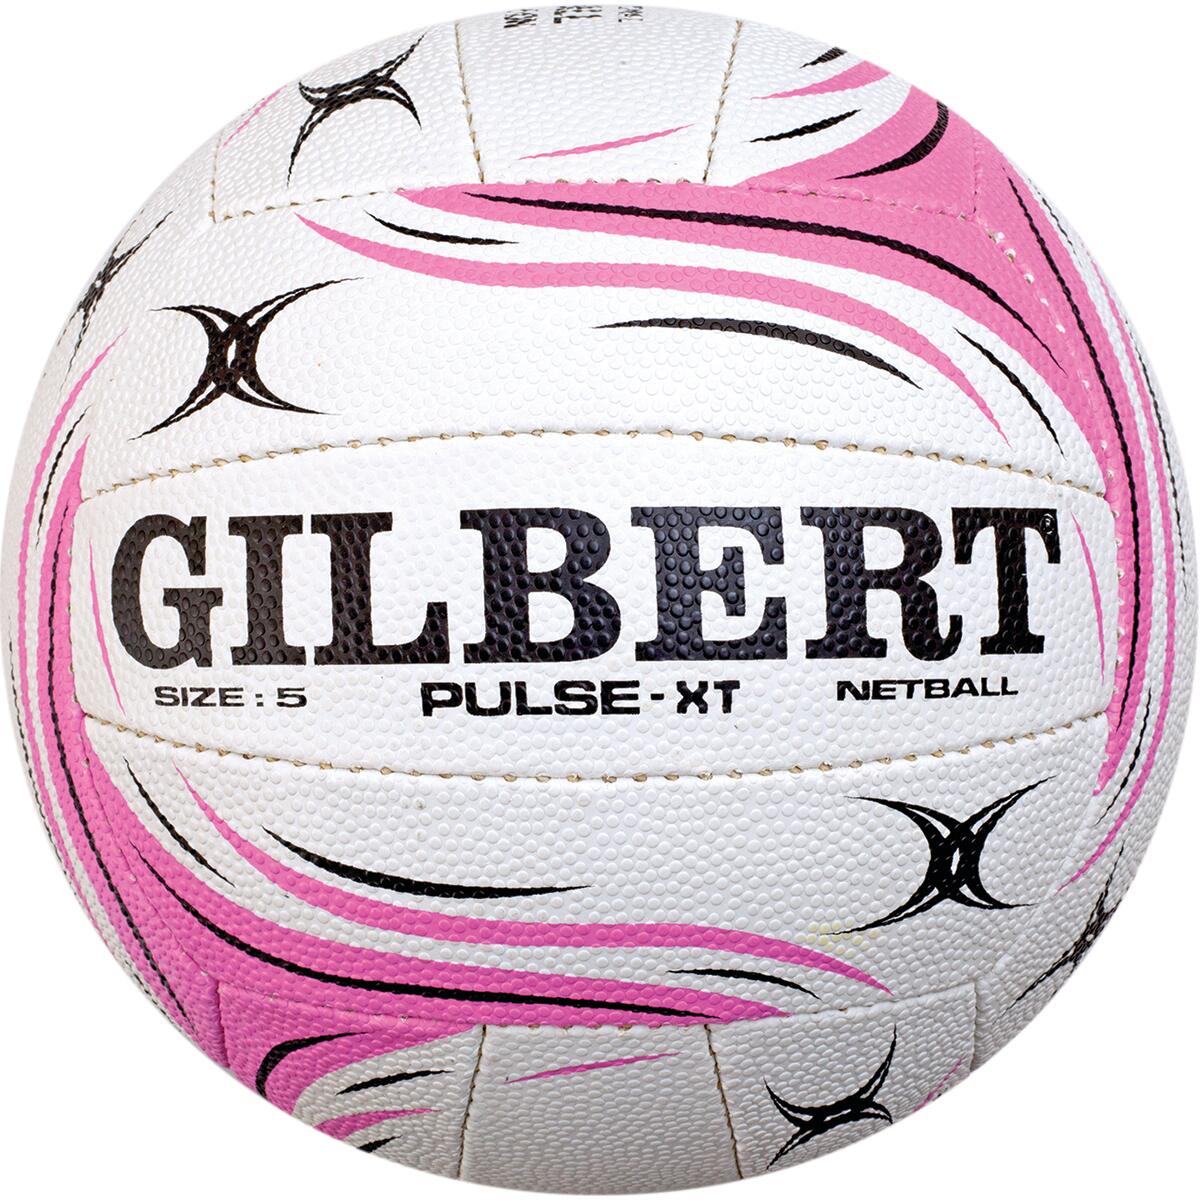 GILBERT Pulse XT Match Ball, Pink / White